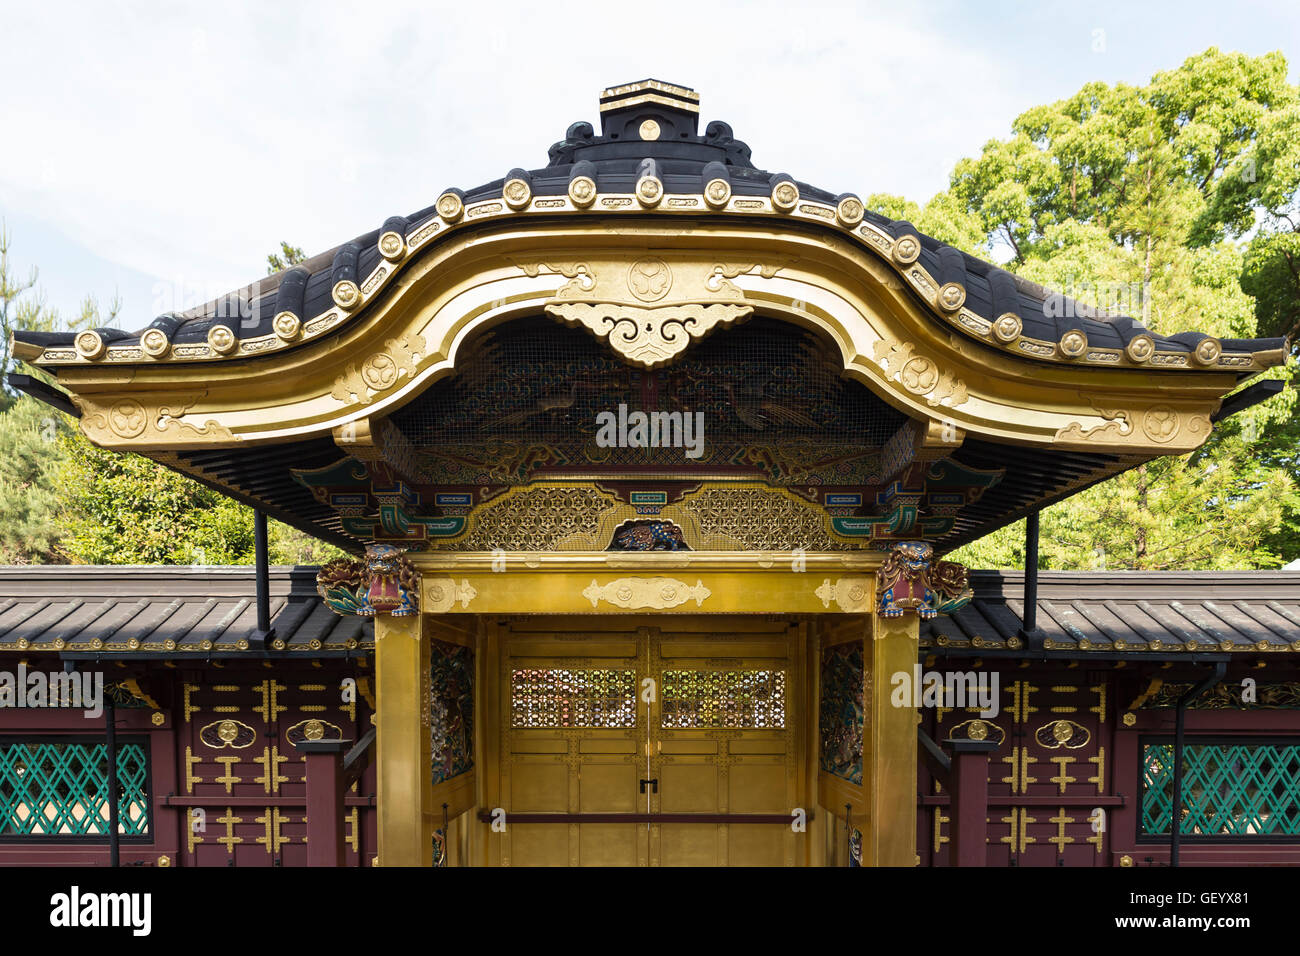 Le golden gate au karamon Toshogu dans le parc Ueno à Tokyo, Japon Banque D'Images